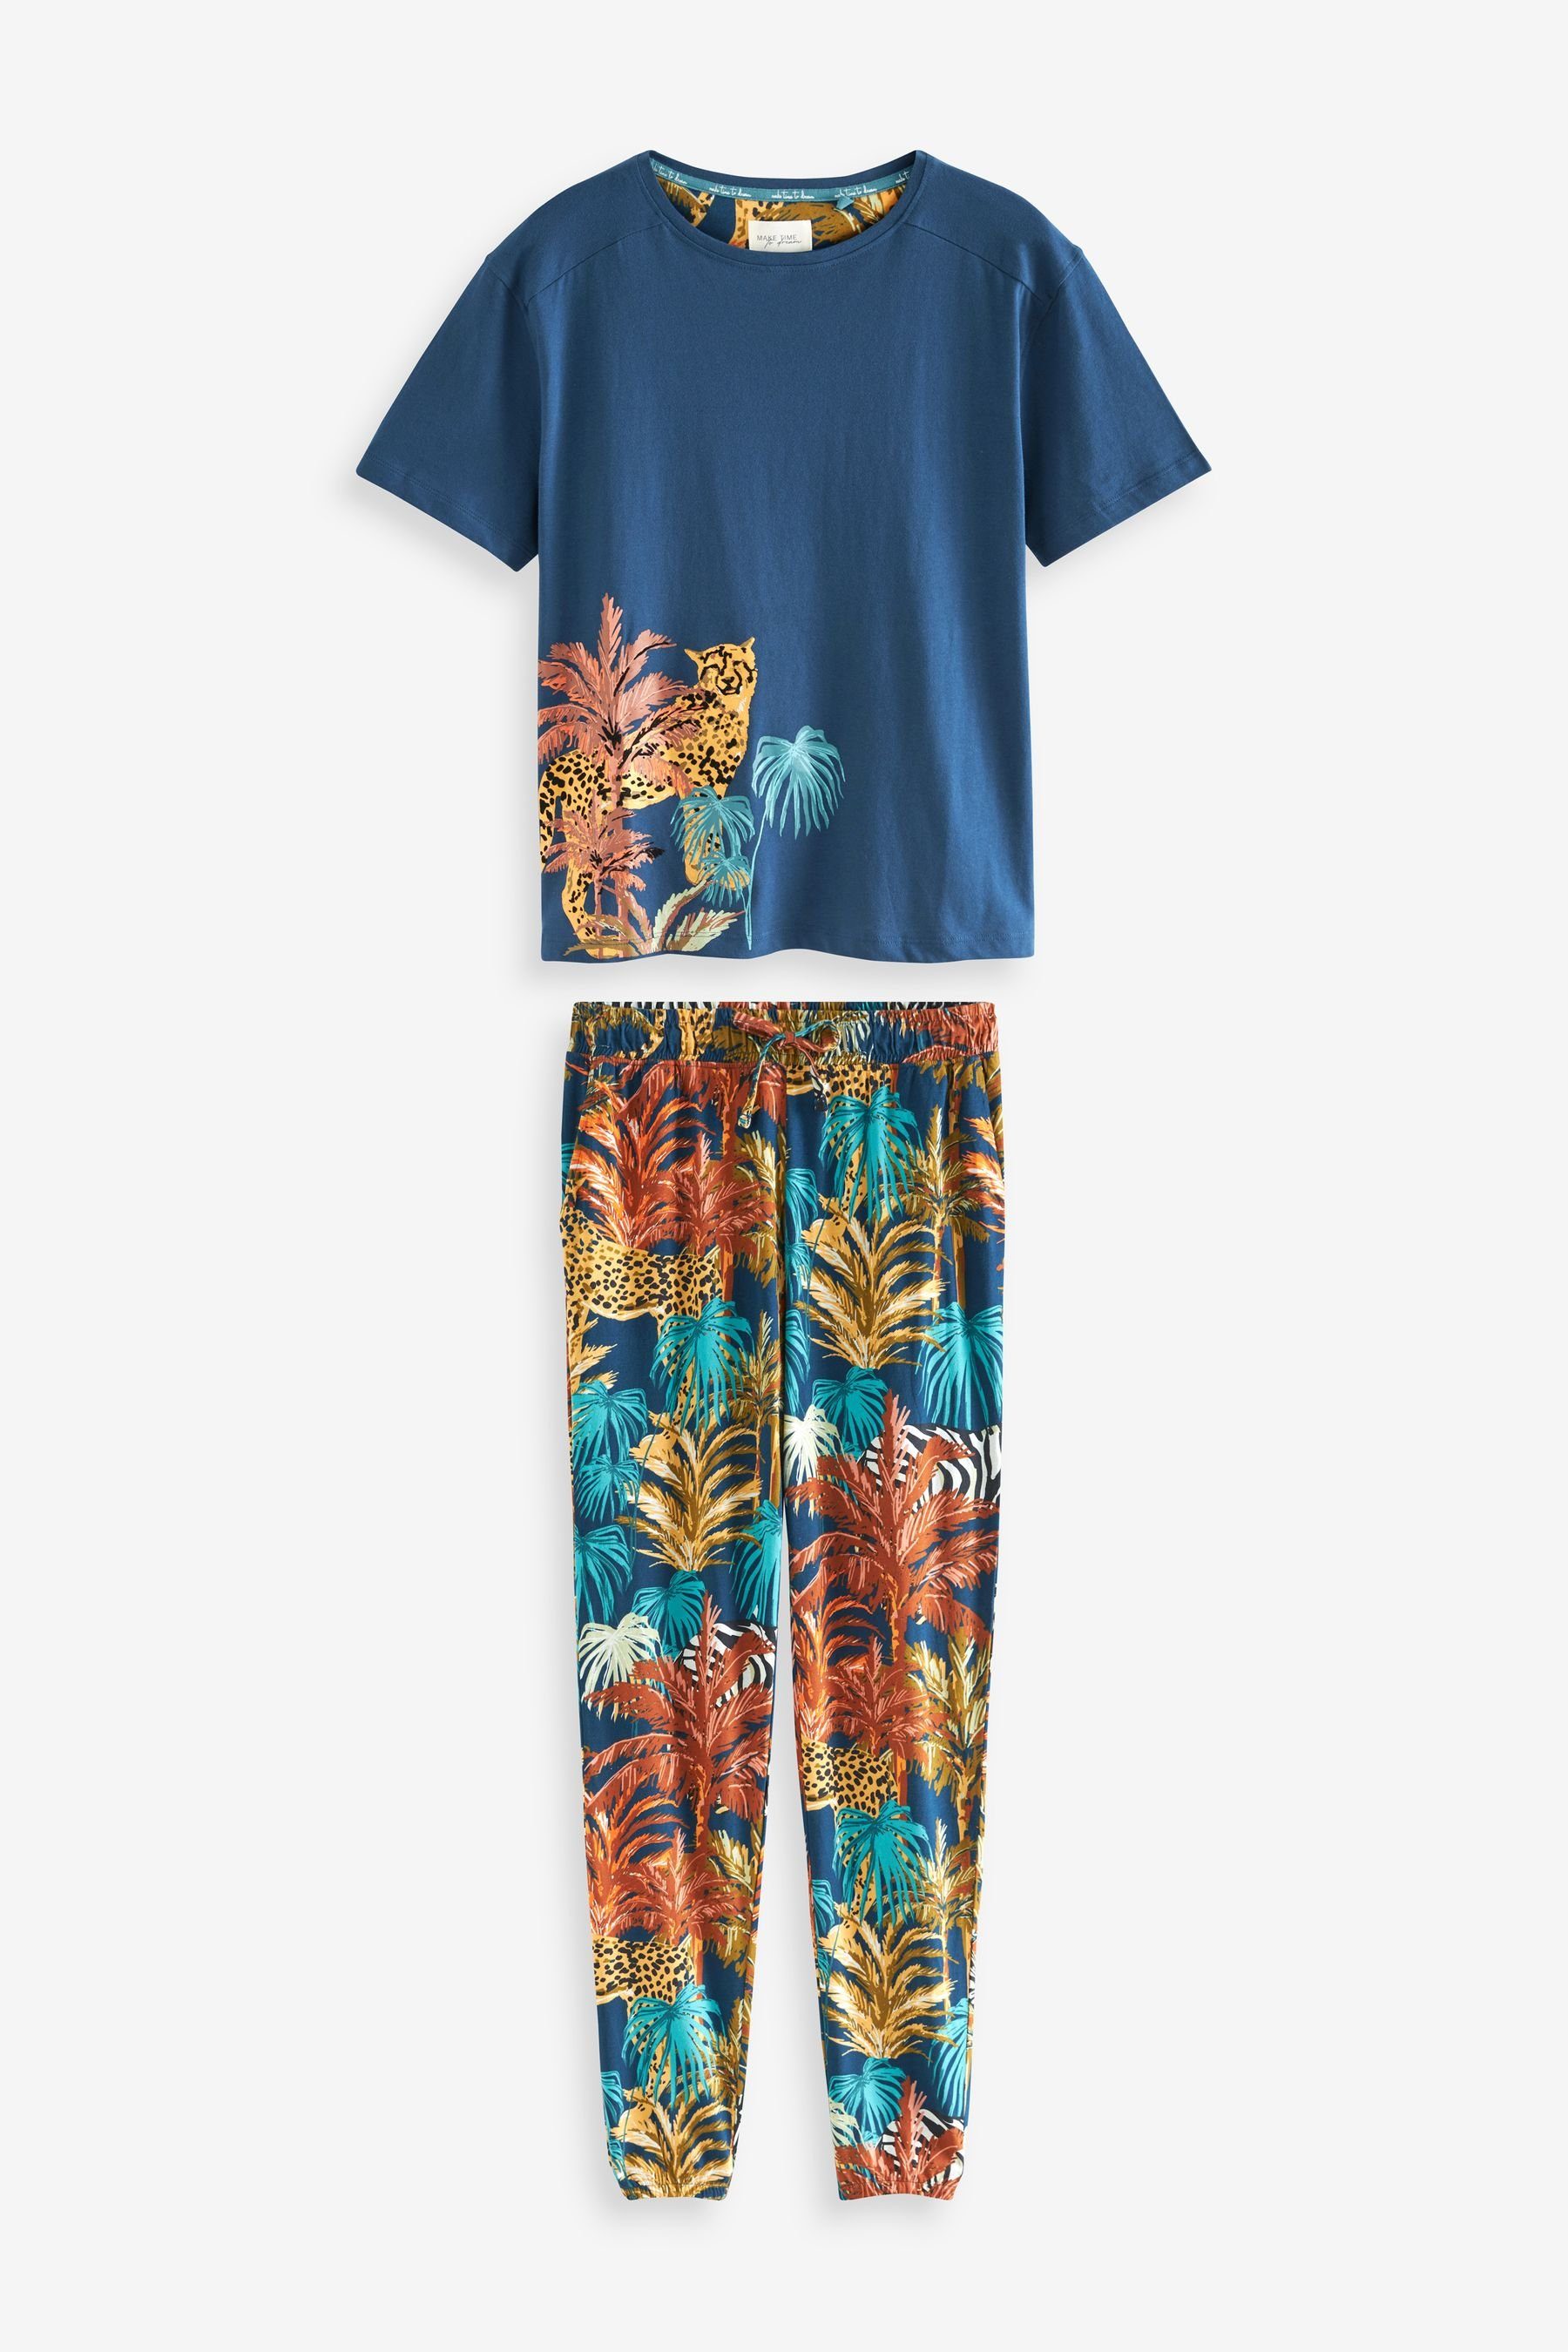 Next Pyjama Kurzärmeliger Baumwoll-Pyjama (2 tlg) Navy Blue Jungle